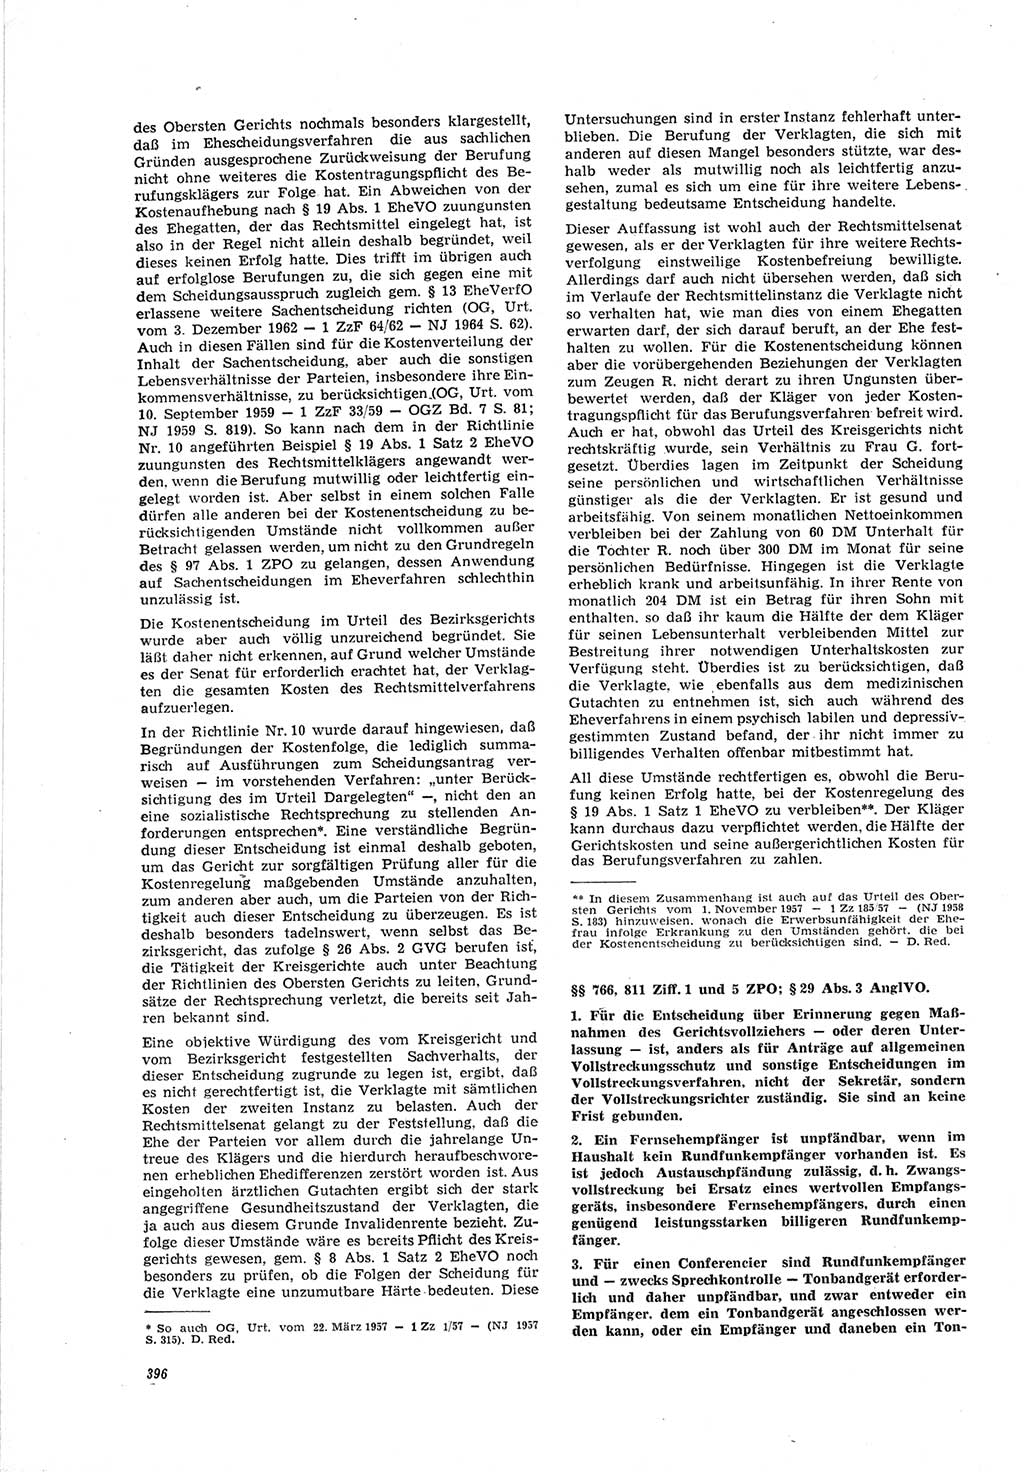 Neue Justiz (NJ), Zeitschrift für Recht und Rechtswissenschaft [Deutsche Demokratische Republik (DDR)], 19. Jahrgang 1965, Seite 396 (NJ DDR 1965, S. 396)